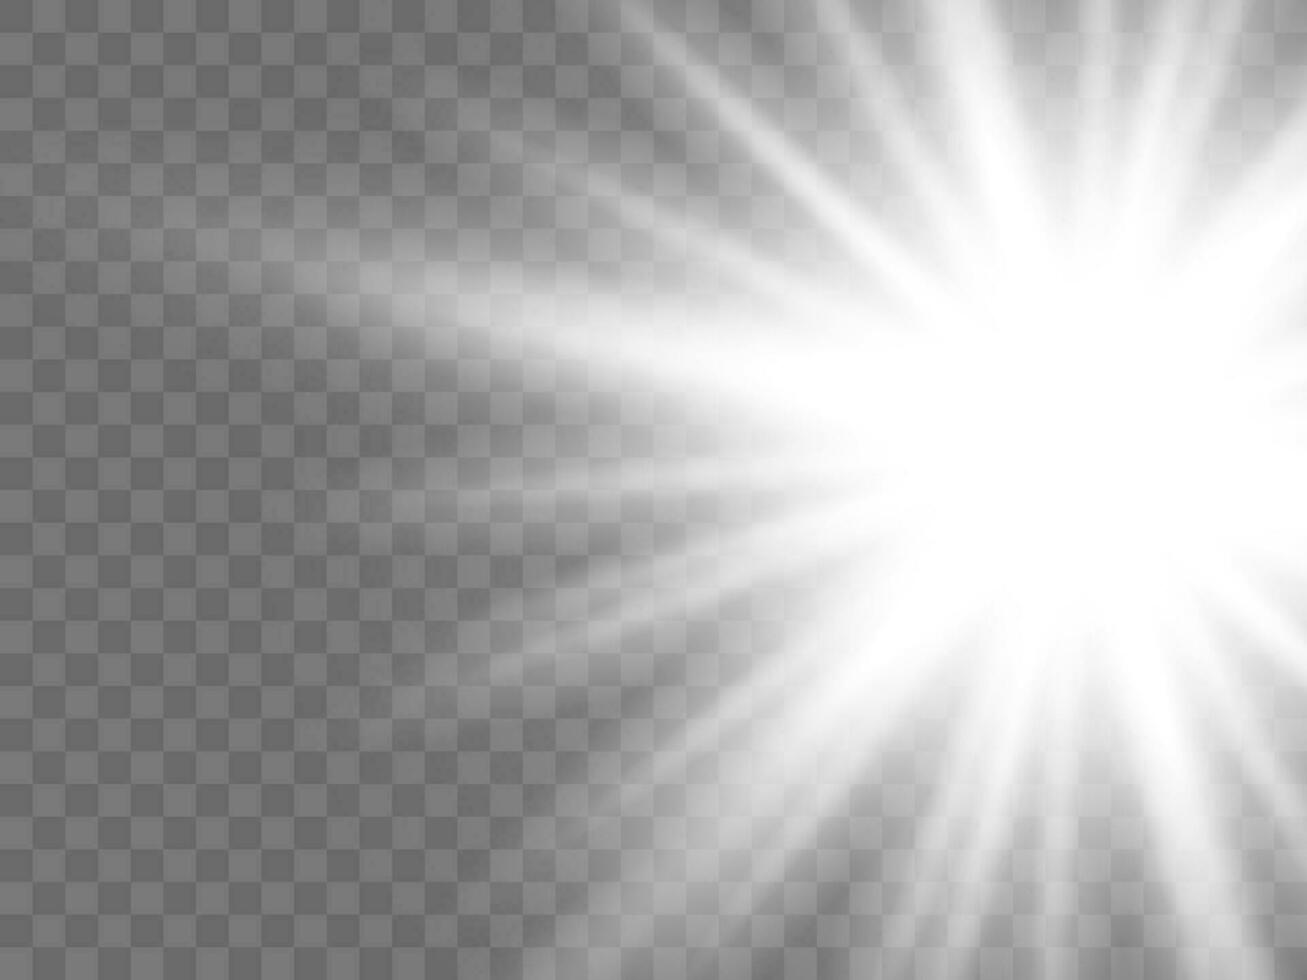 solljus på en bakgrund. isolerat vit strålar av ljus. vektor illustration